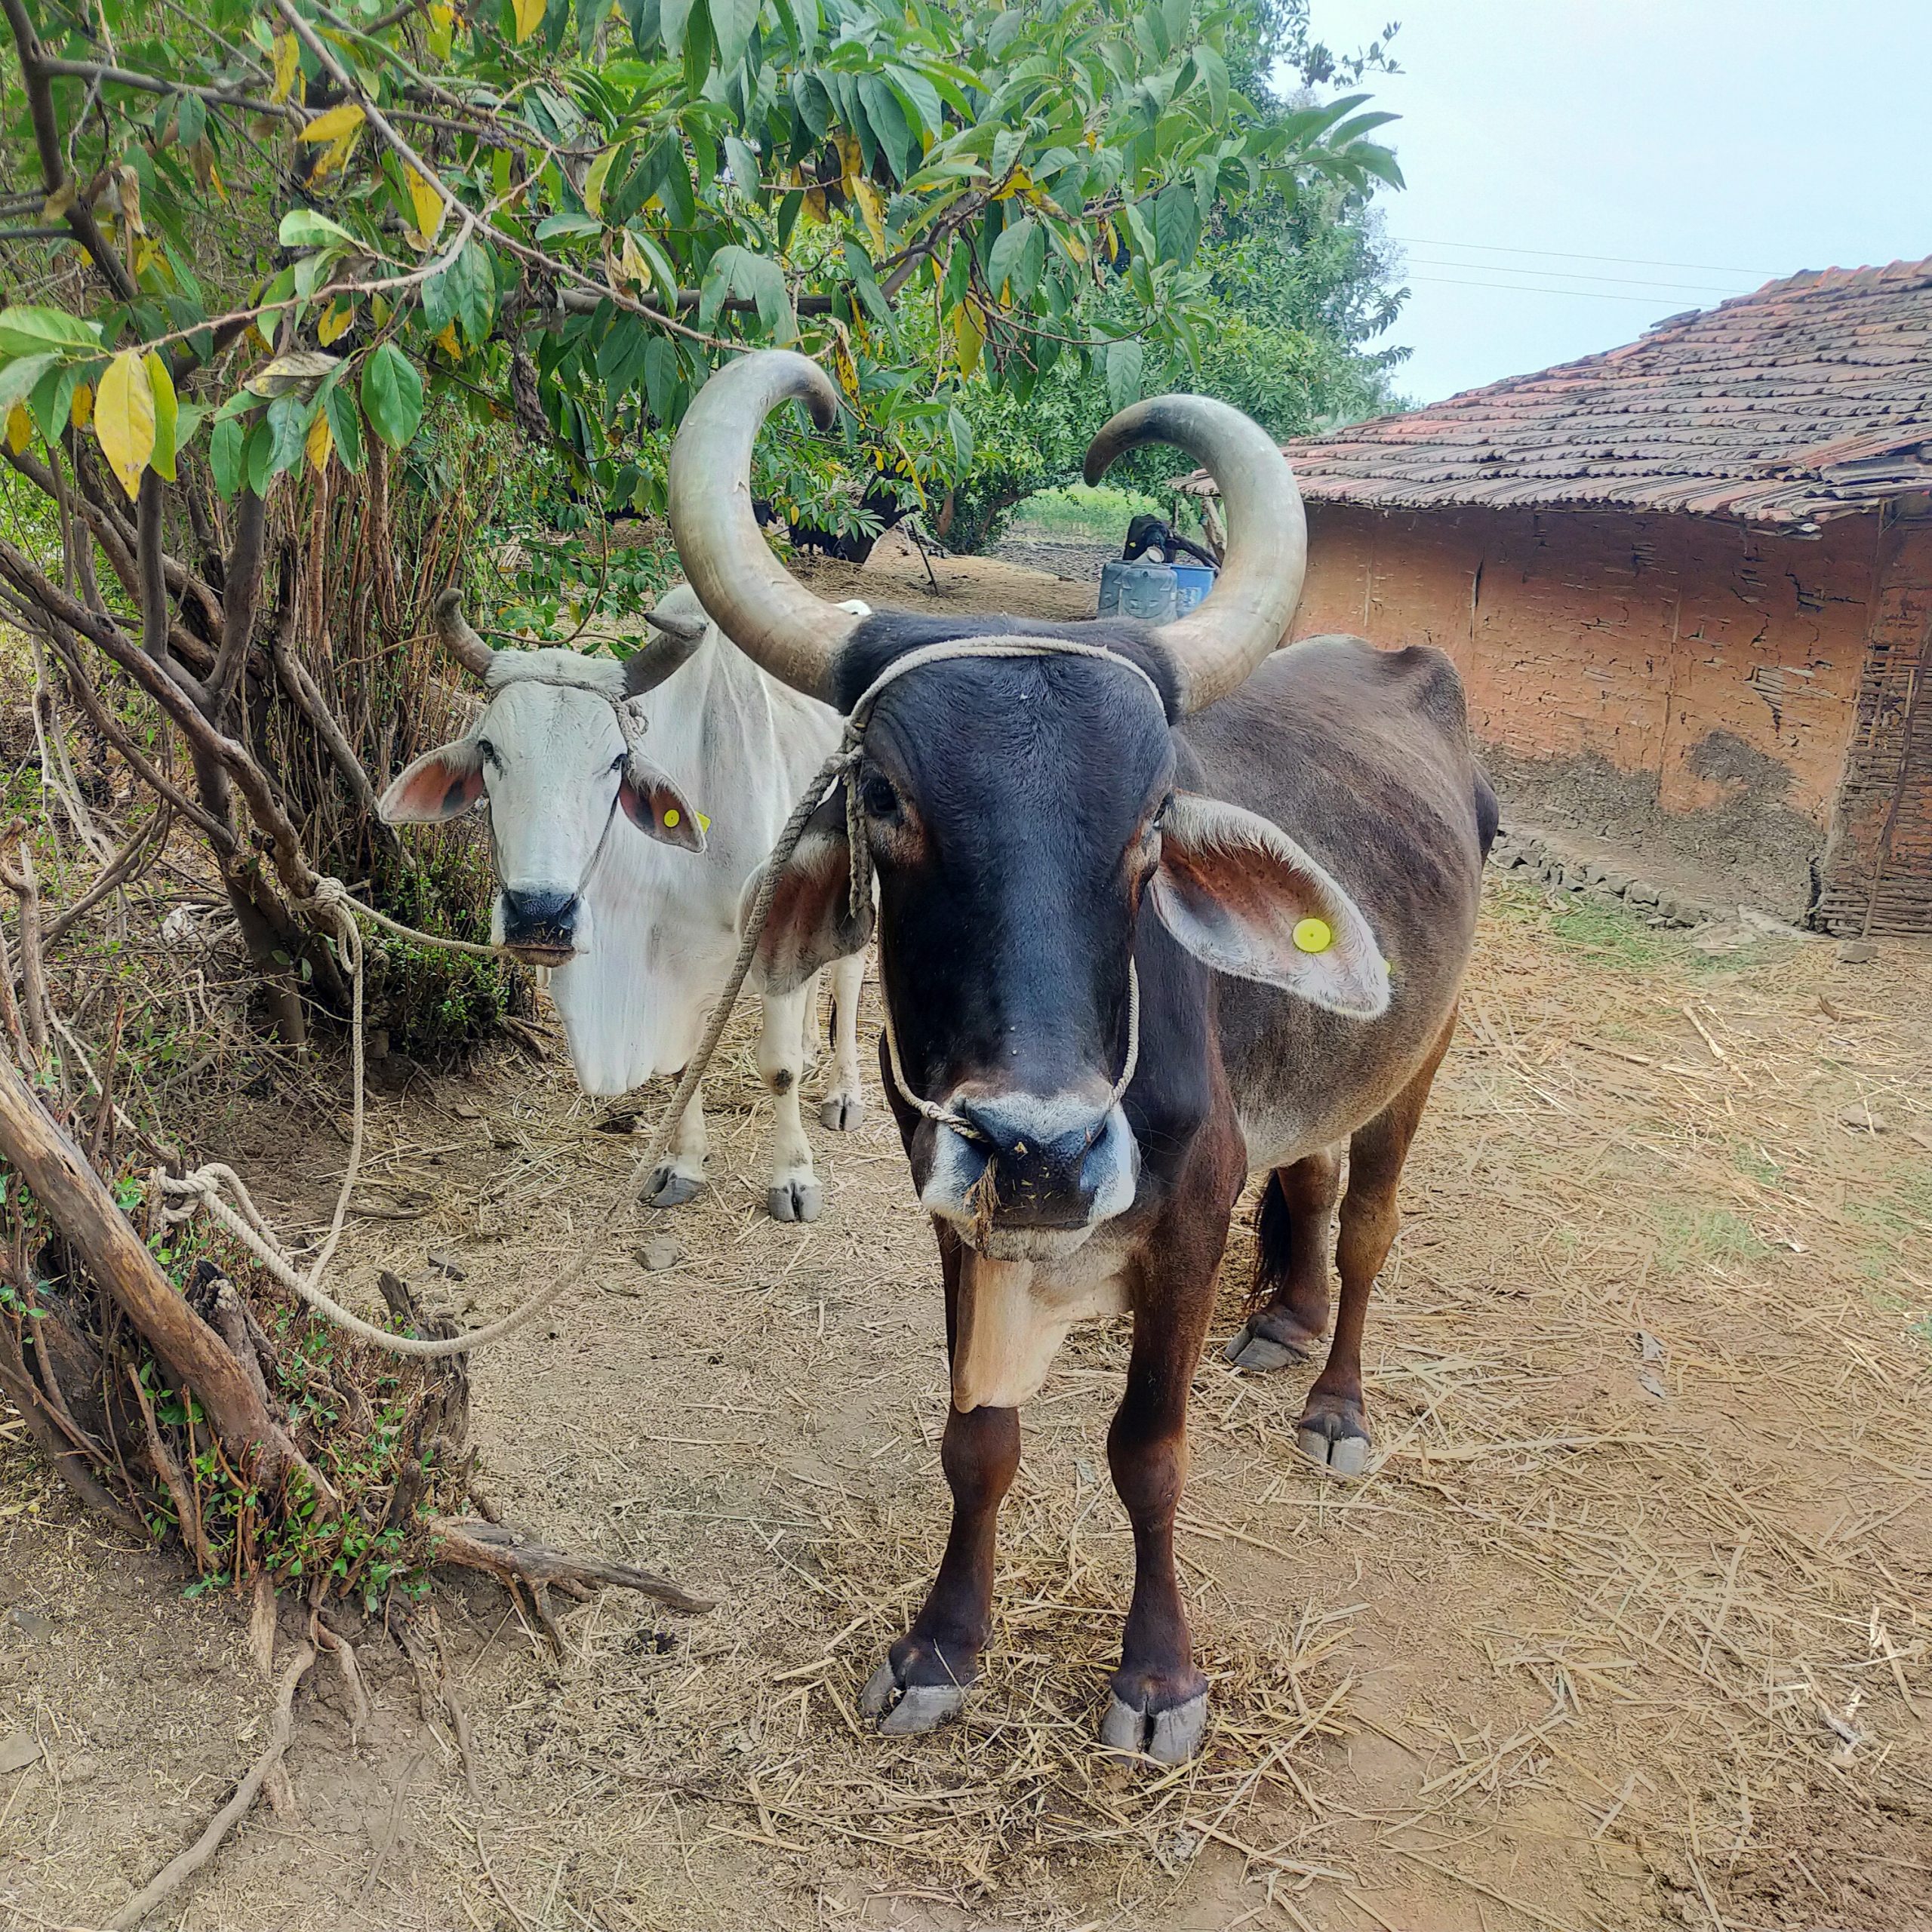 A farmer's oxen